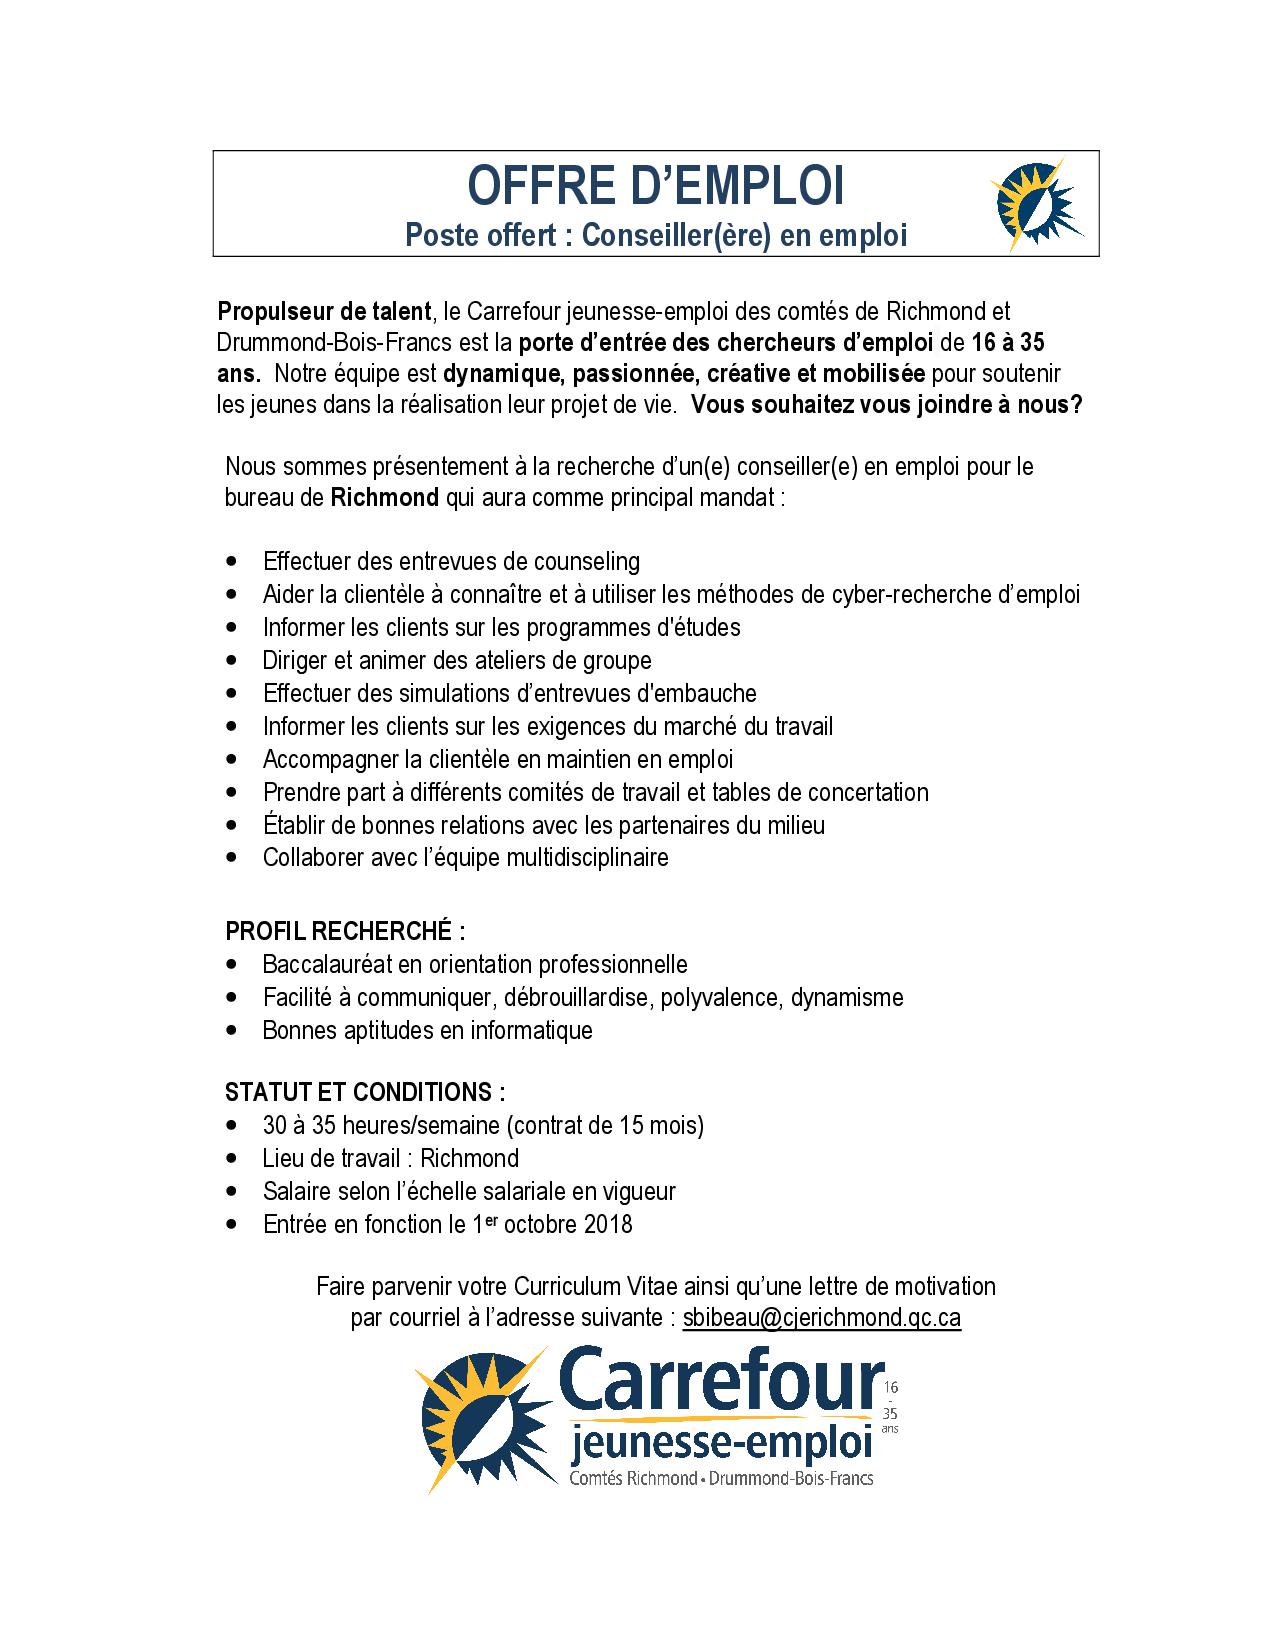 Carrière - Carrefour jeunesse-emploi du comté de Richmond